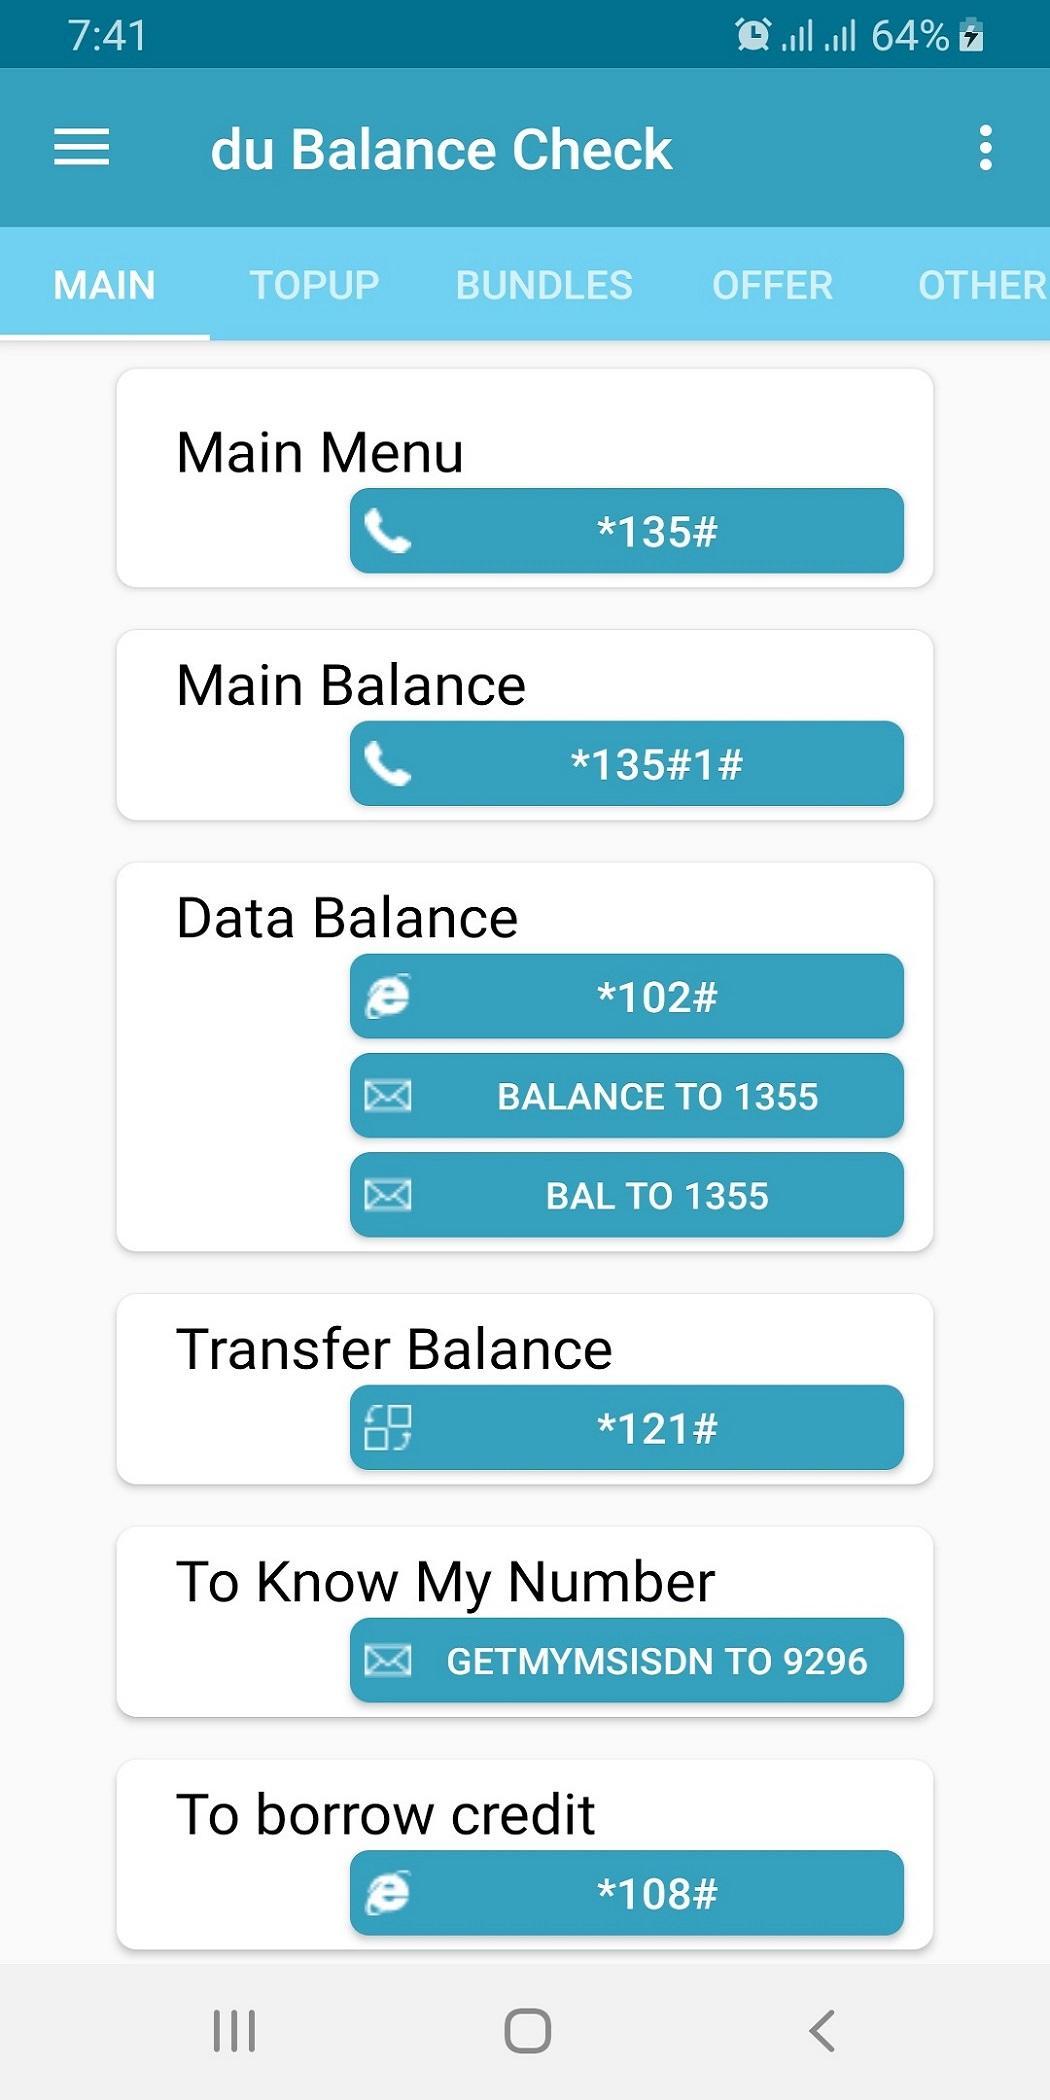 Maxis Balance Check Code : Check Main Balance, Net Balance, Own No and